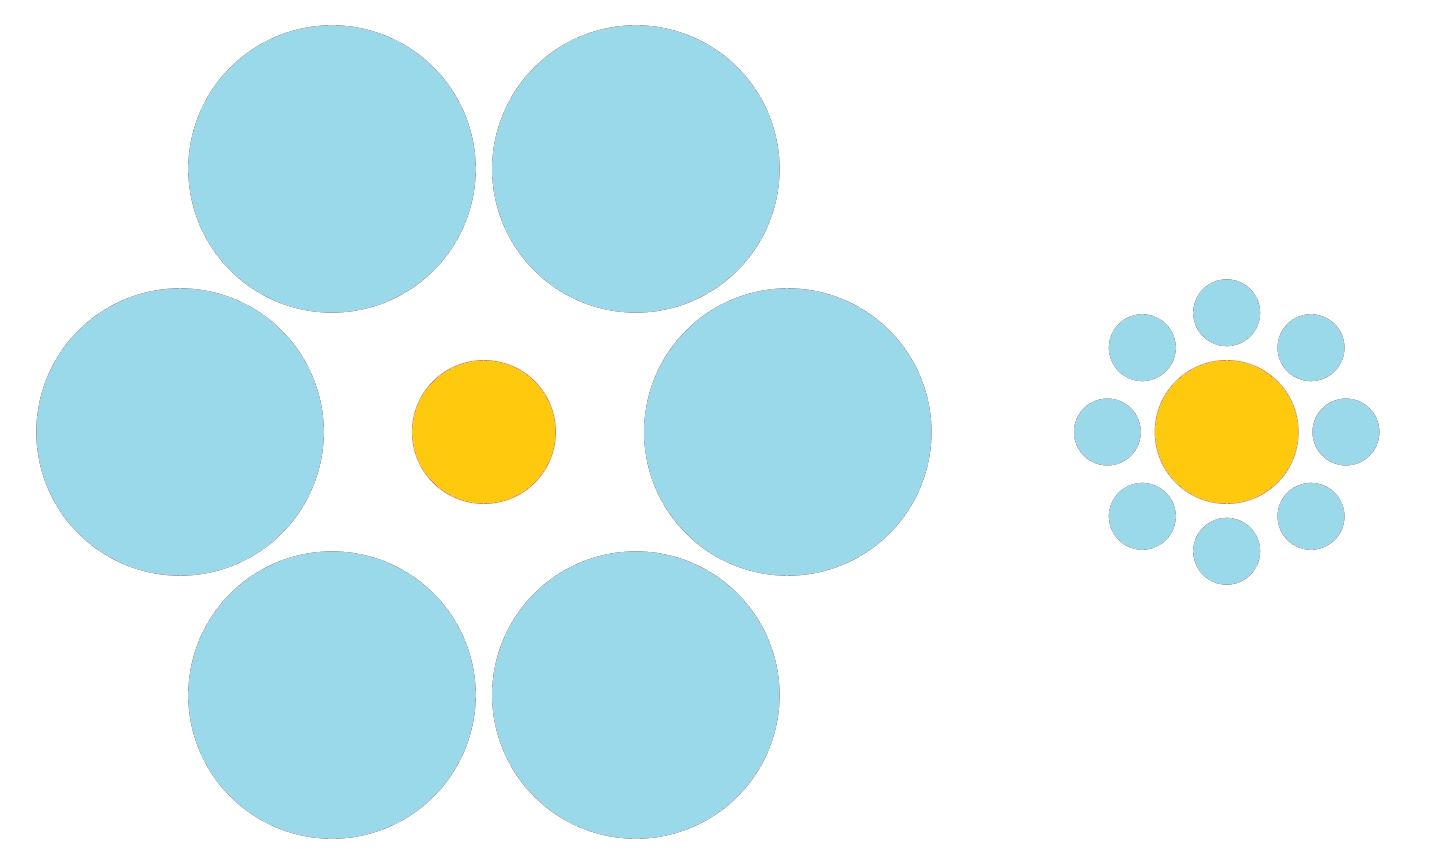 La imagen muestra dos círculos naranjas, uno rodeado por seis círculos azules grandes y la otra rodeada por siete círculos azules más pequeños